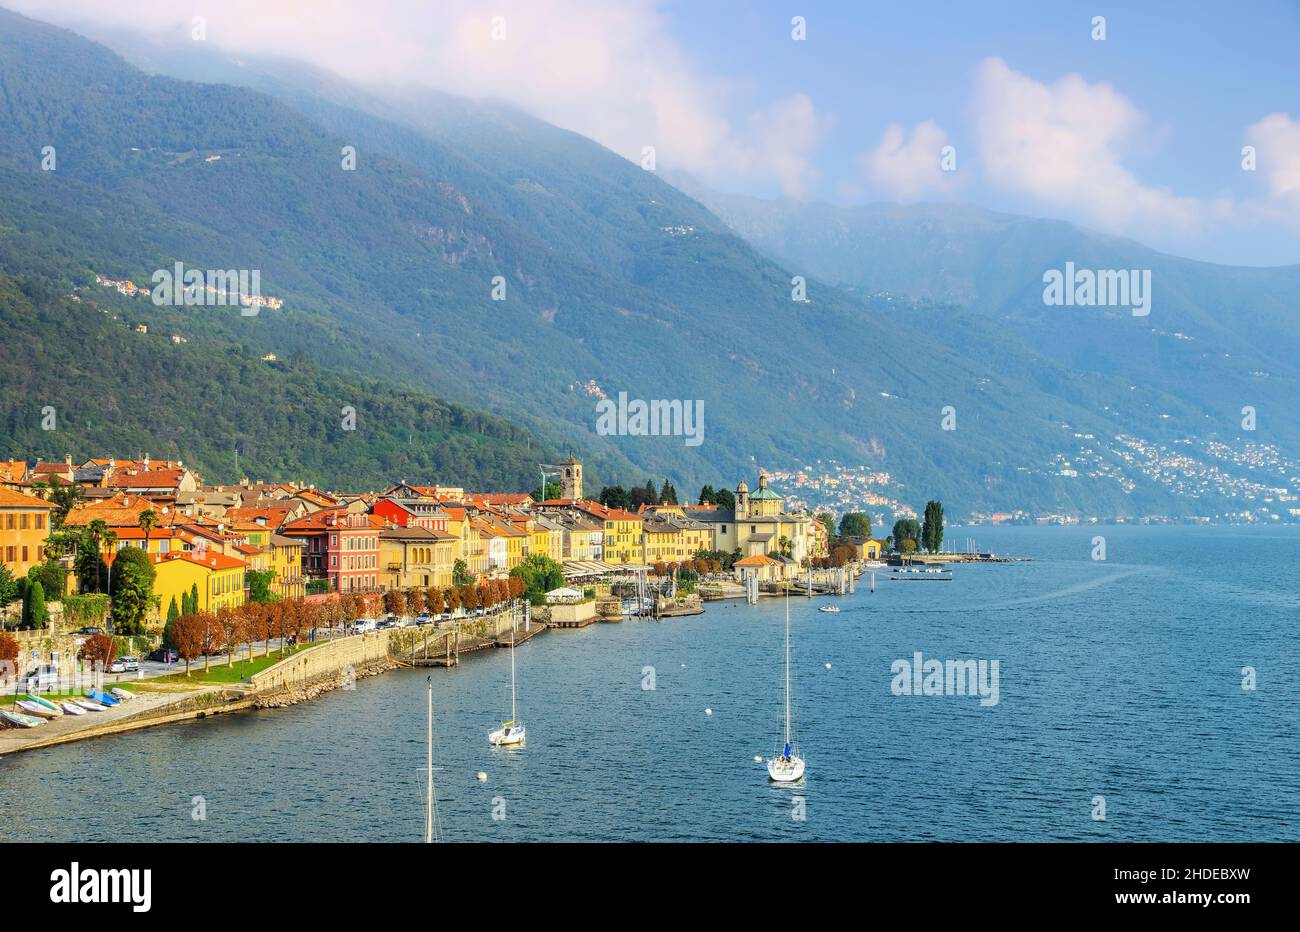 Lago Maggiore in northern Italy Stock Photo